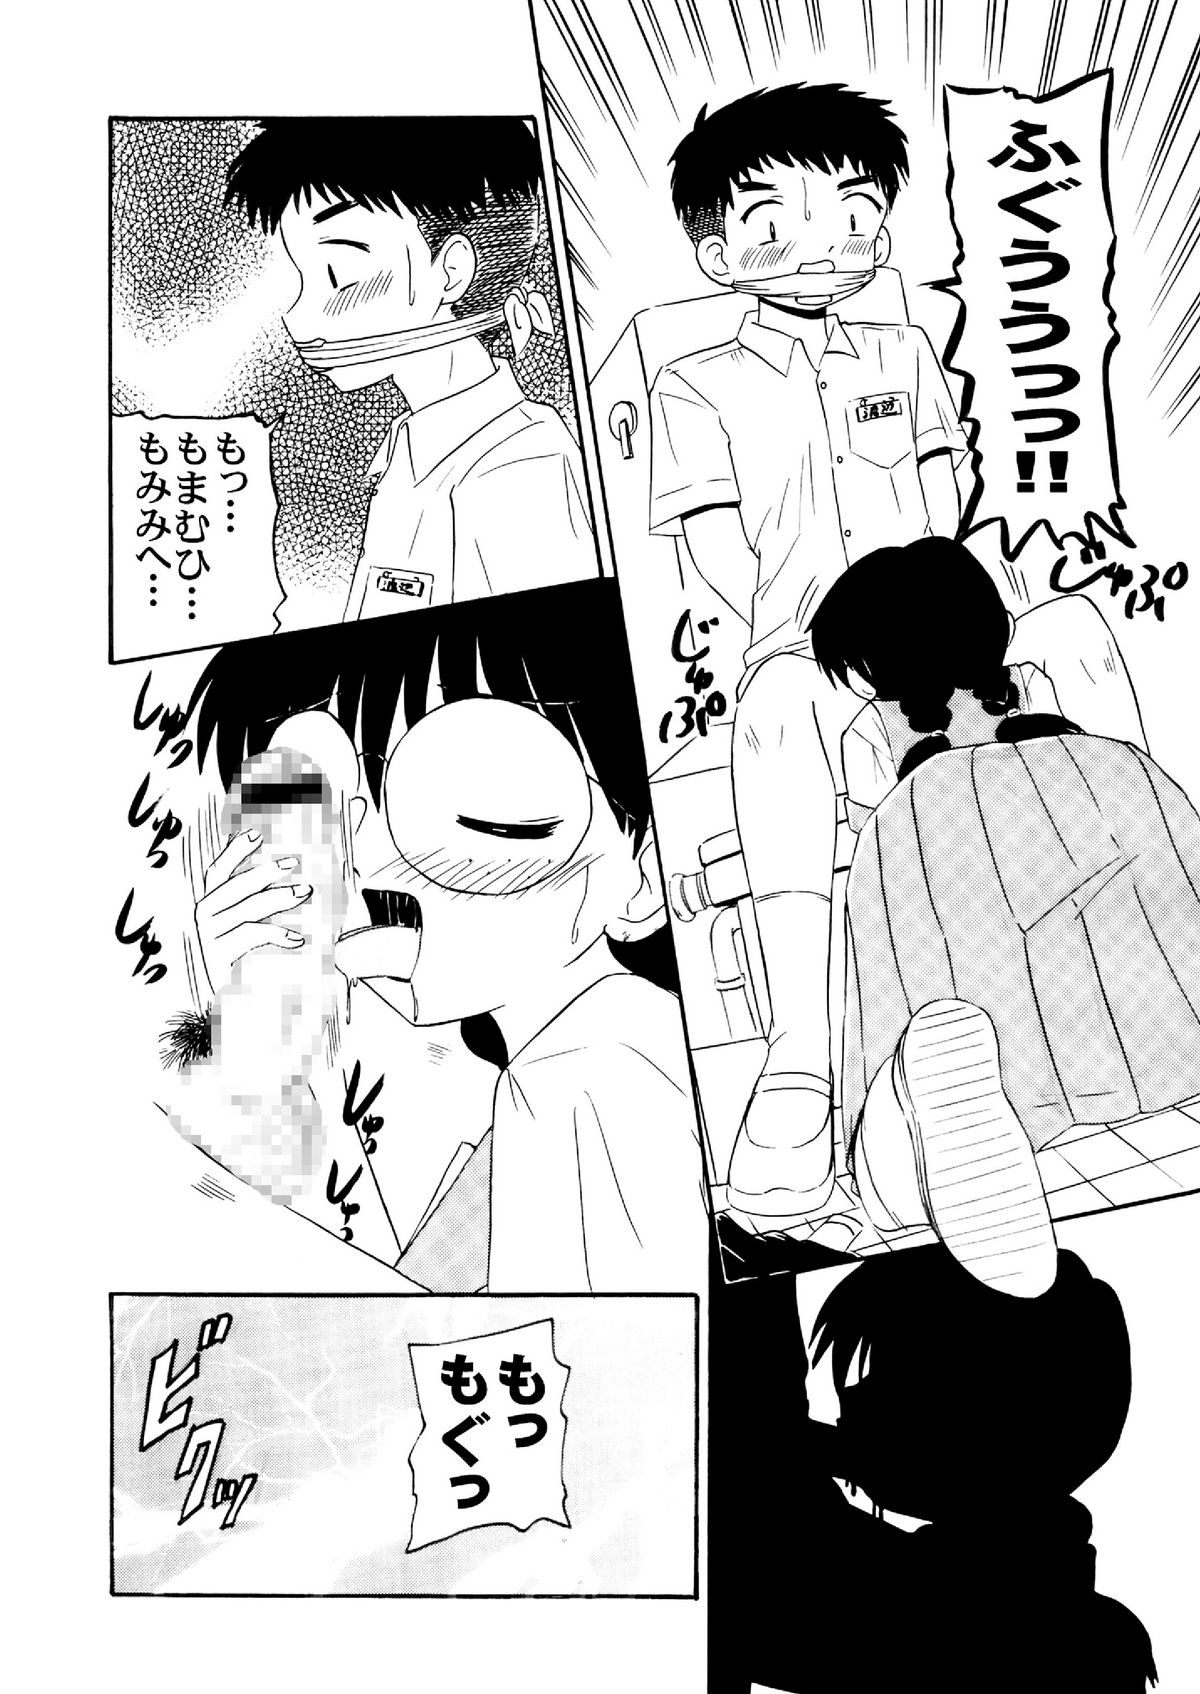 [Salvage Kouboh] Sousaku tamashii 01 page 18 full